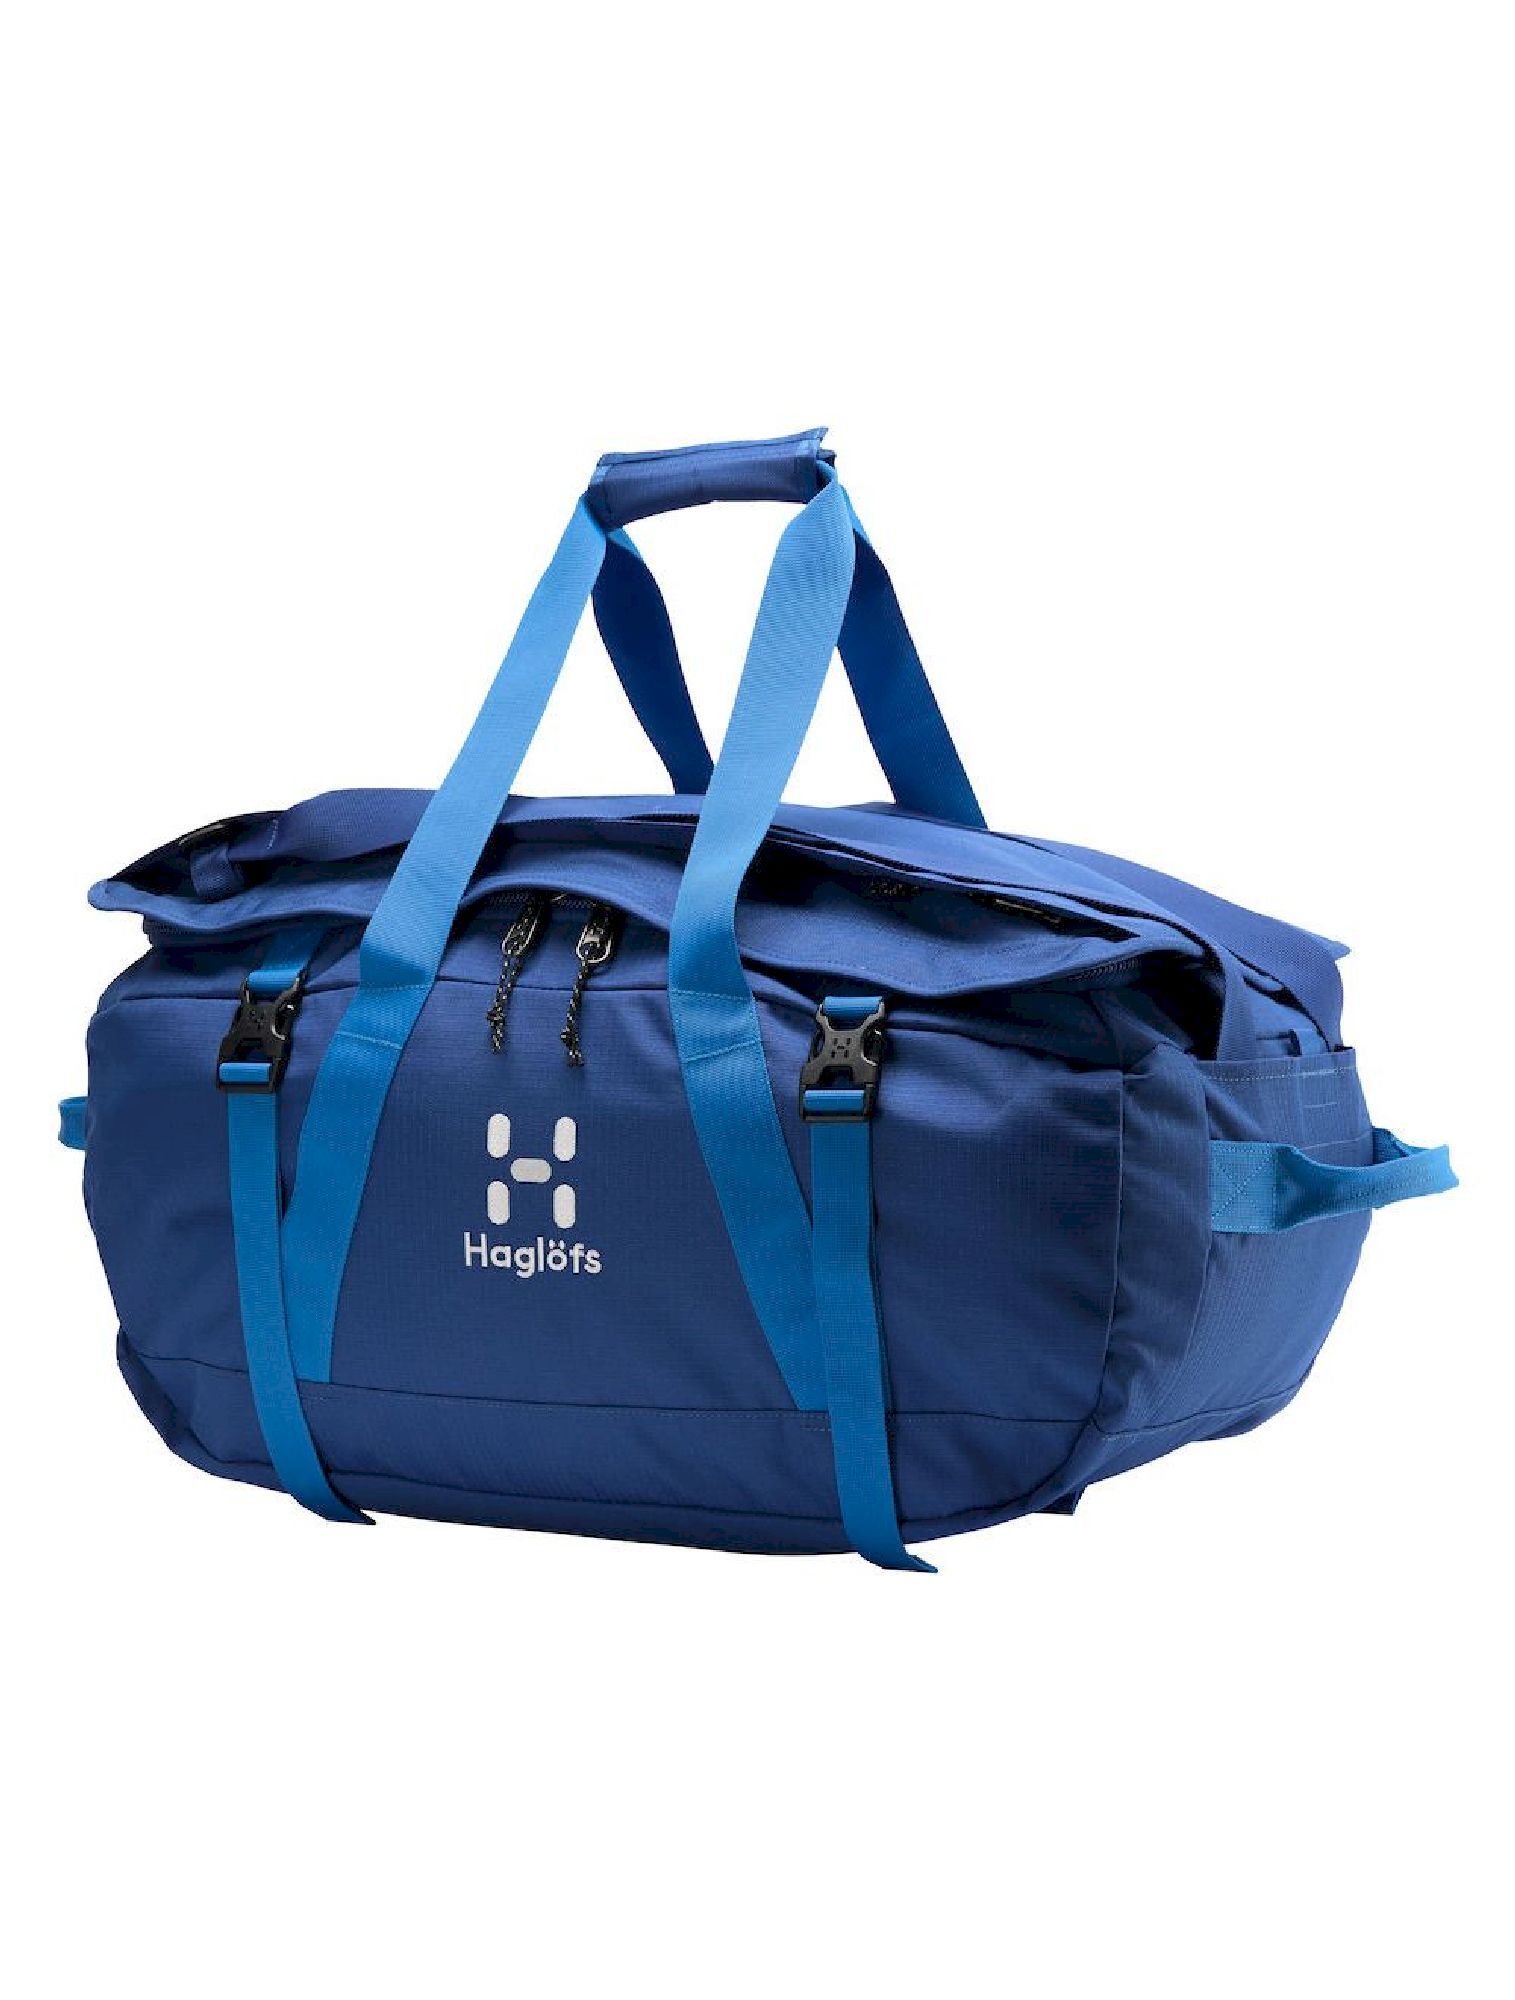 Haglöfs Cargo 60 - Hiking backpack | Hardloop